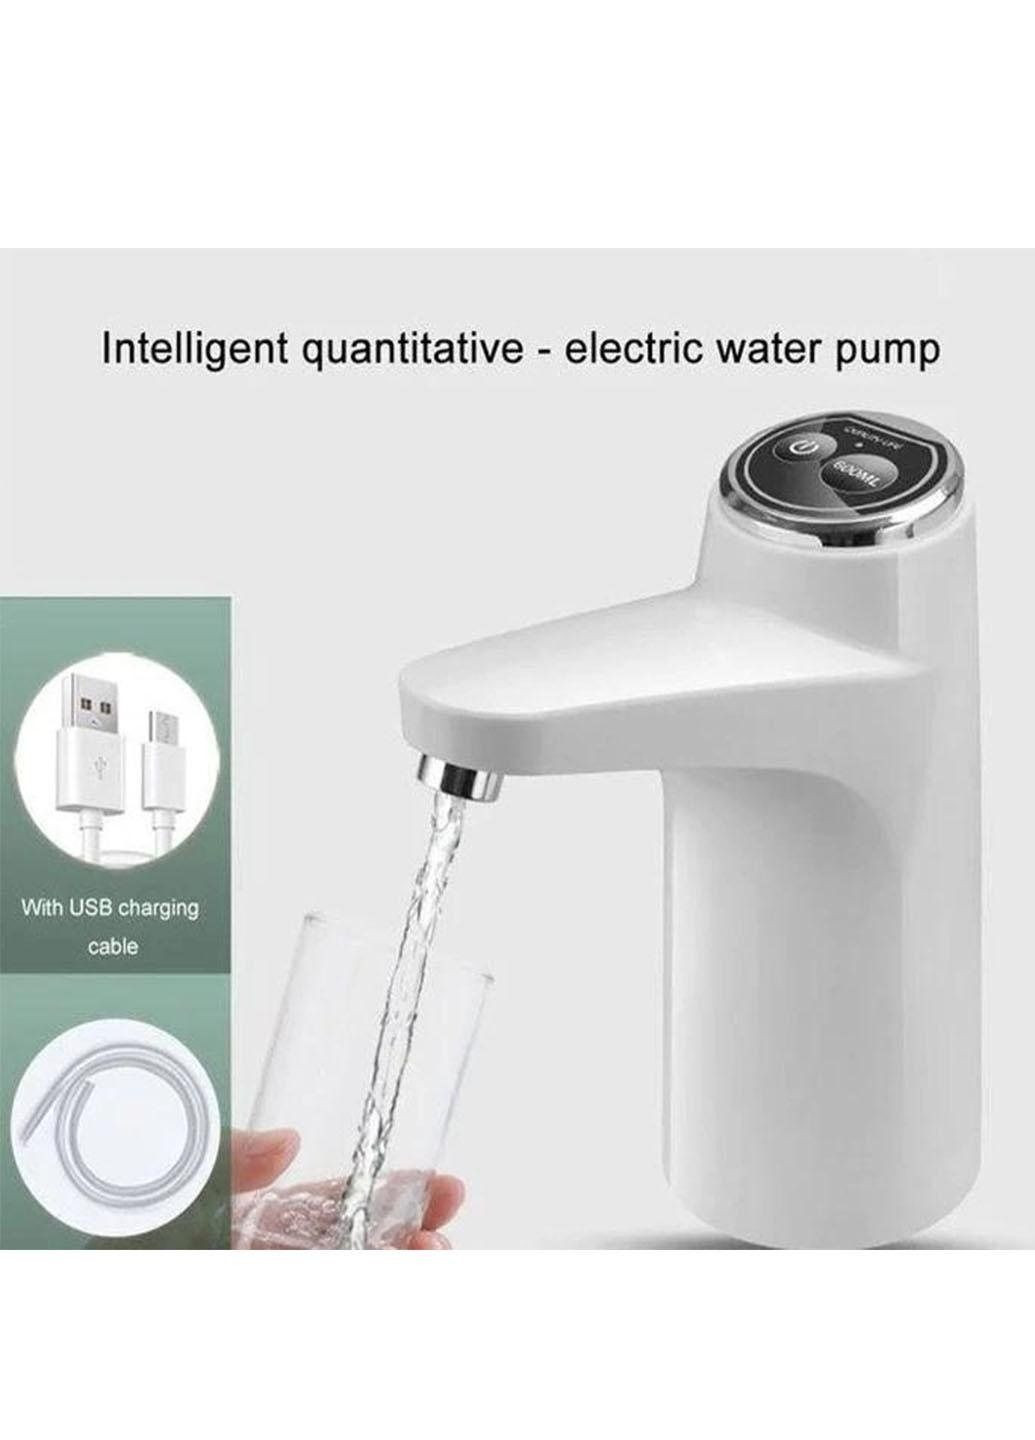 Электрический сенсорный насос для воды Aqua Pump Elite на аккумуляторе 2 режима набора воды Good Idea mag-623 (290187081)